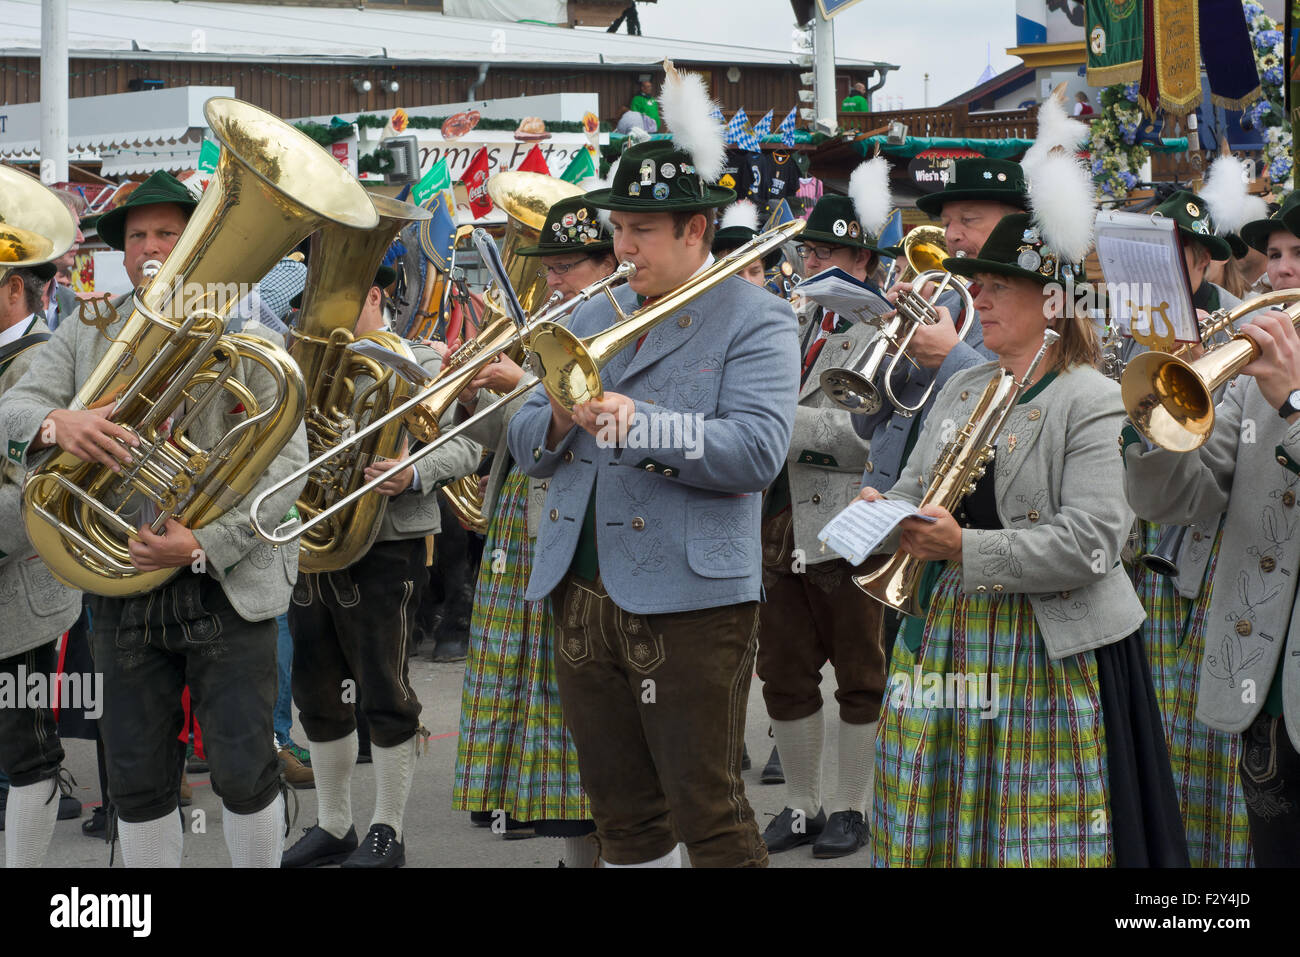 MÜNCHEN, DEUTSCHLAND – SEPT. 20, 2015: traditionelle Marching Bands mit lokalen Kostümen unterhalten Scharen von Besuchern auf dem jährlichen Oktoberfest. Das Festival läuft vom 19. September bis 4. Oktober 2015 in München Stockfoto